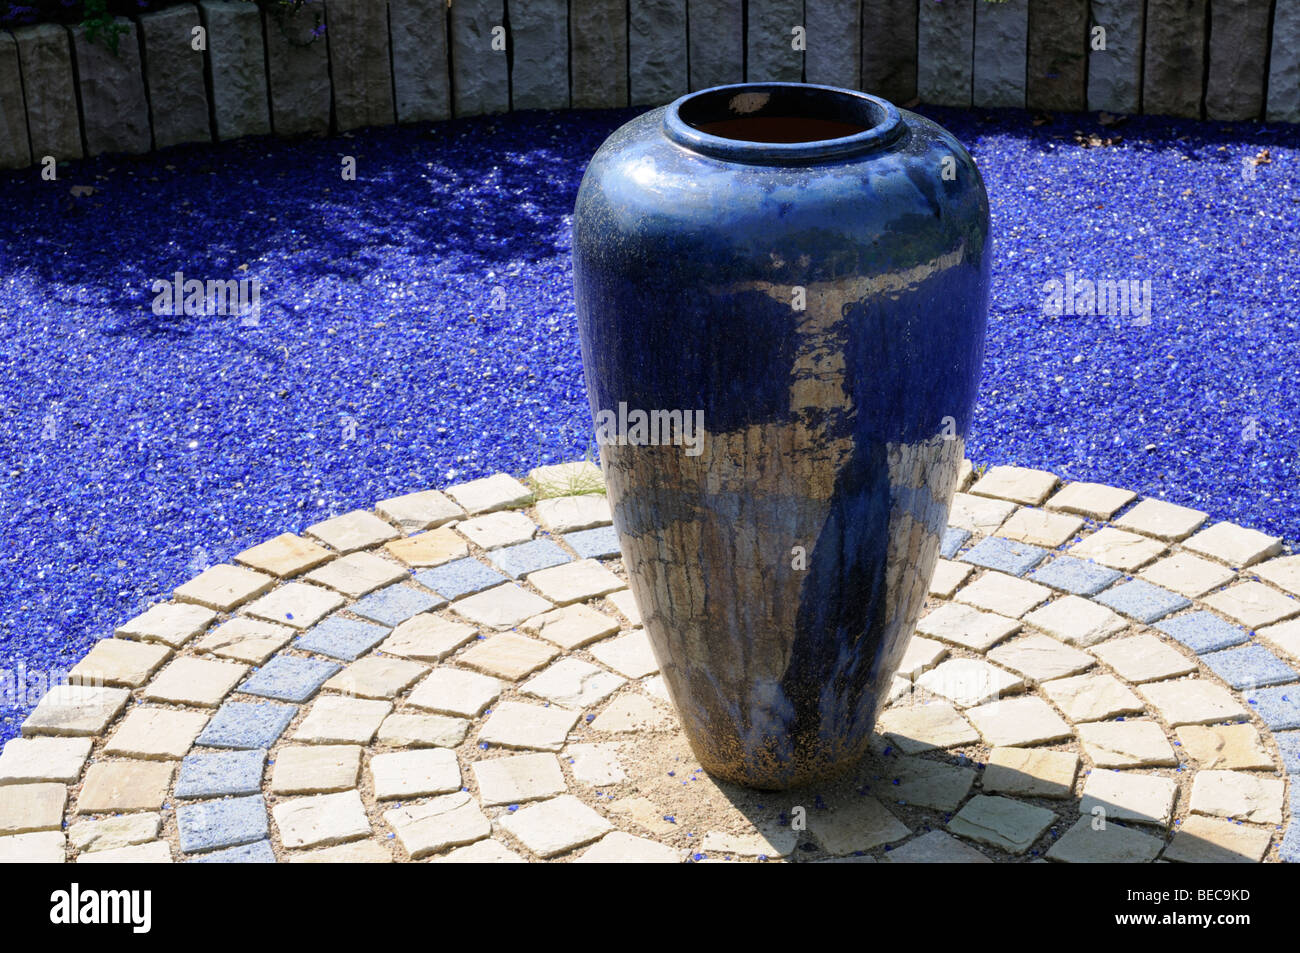 Blaue Blumenvase, Arboretum, Ellerhoop, Deutschland. - Blue flower vase, Arboretum, Ellerhoop, Germany. Stock Photo